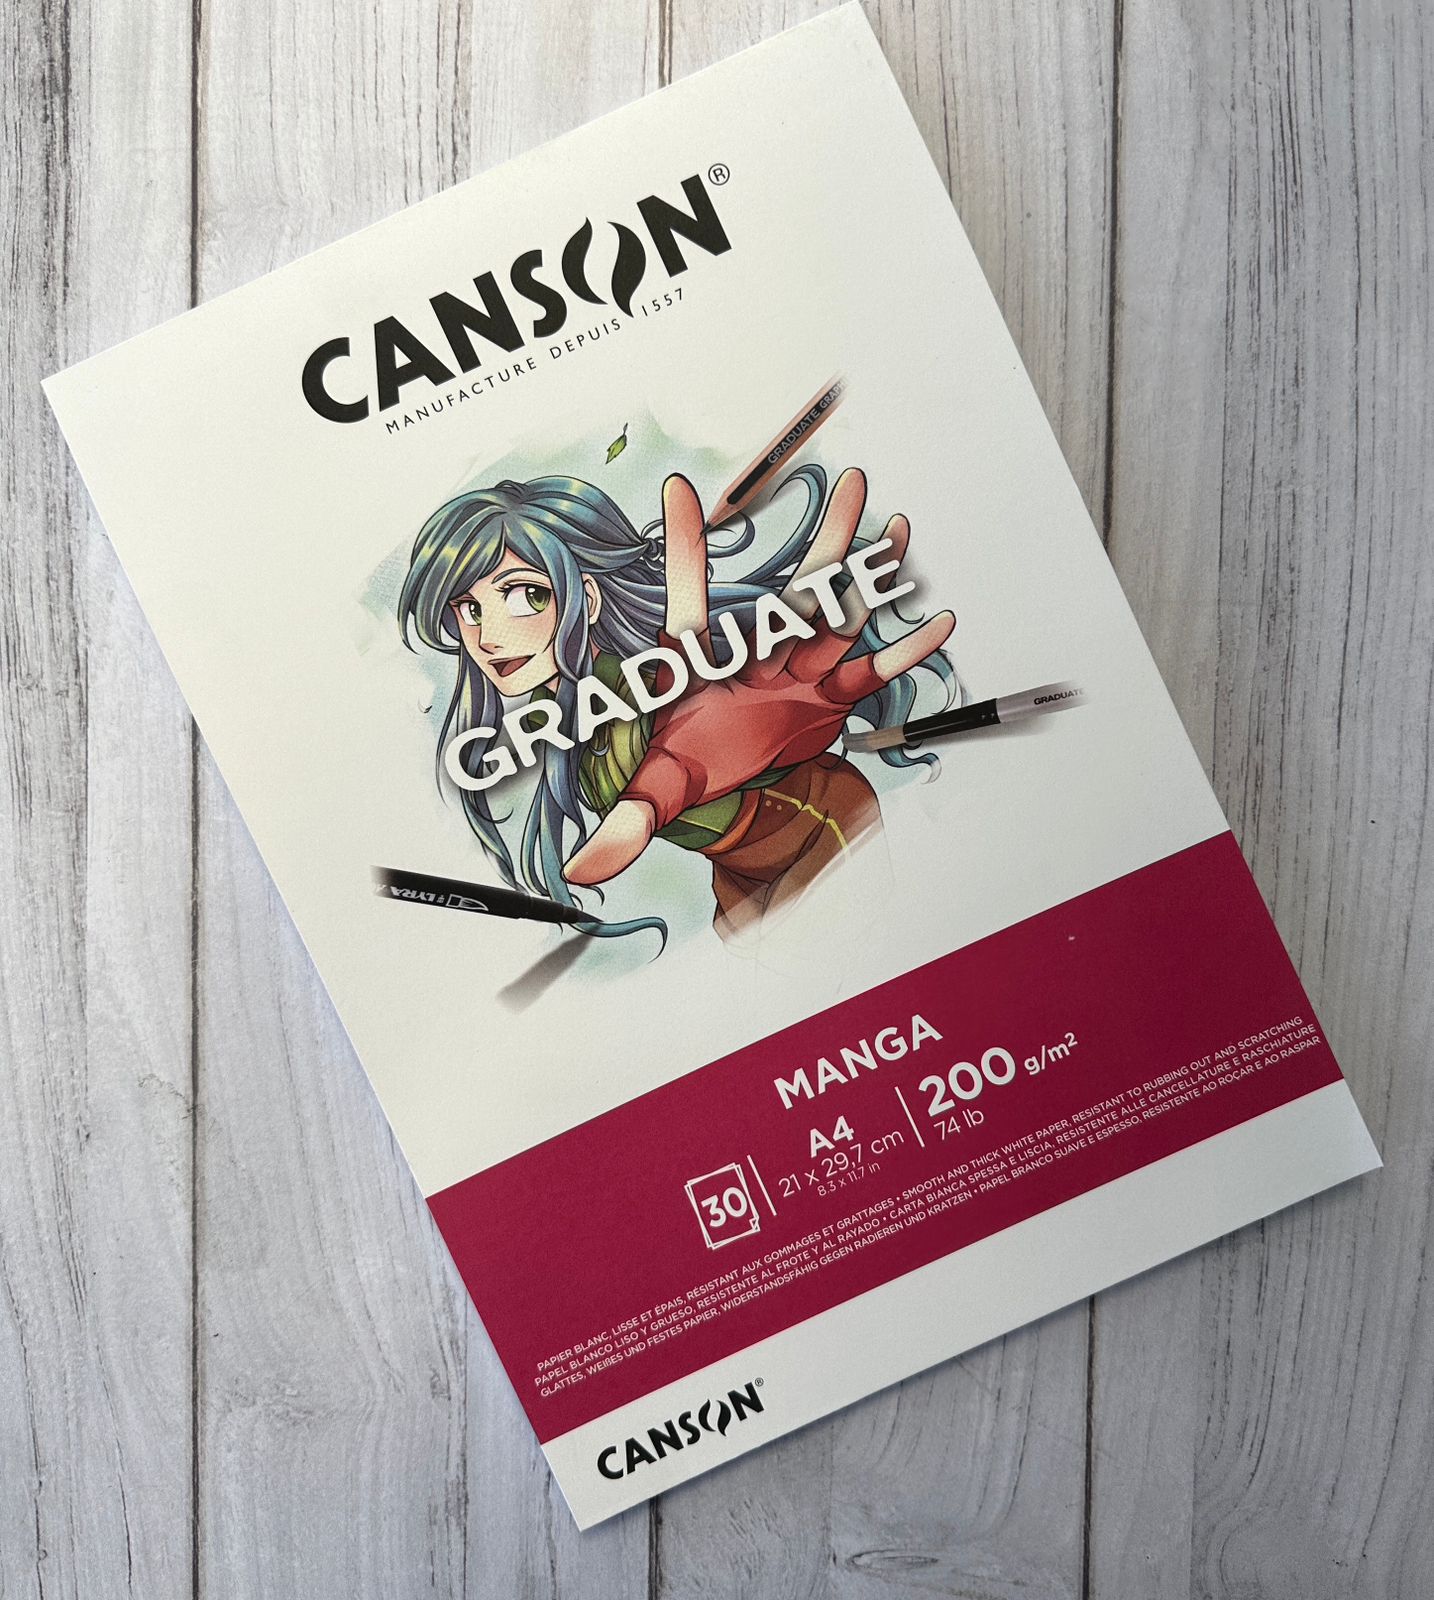 Canson Graduate Manga Books